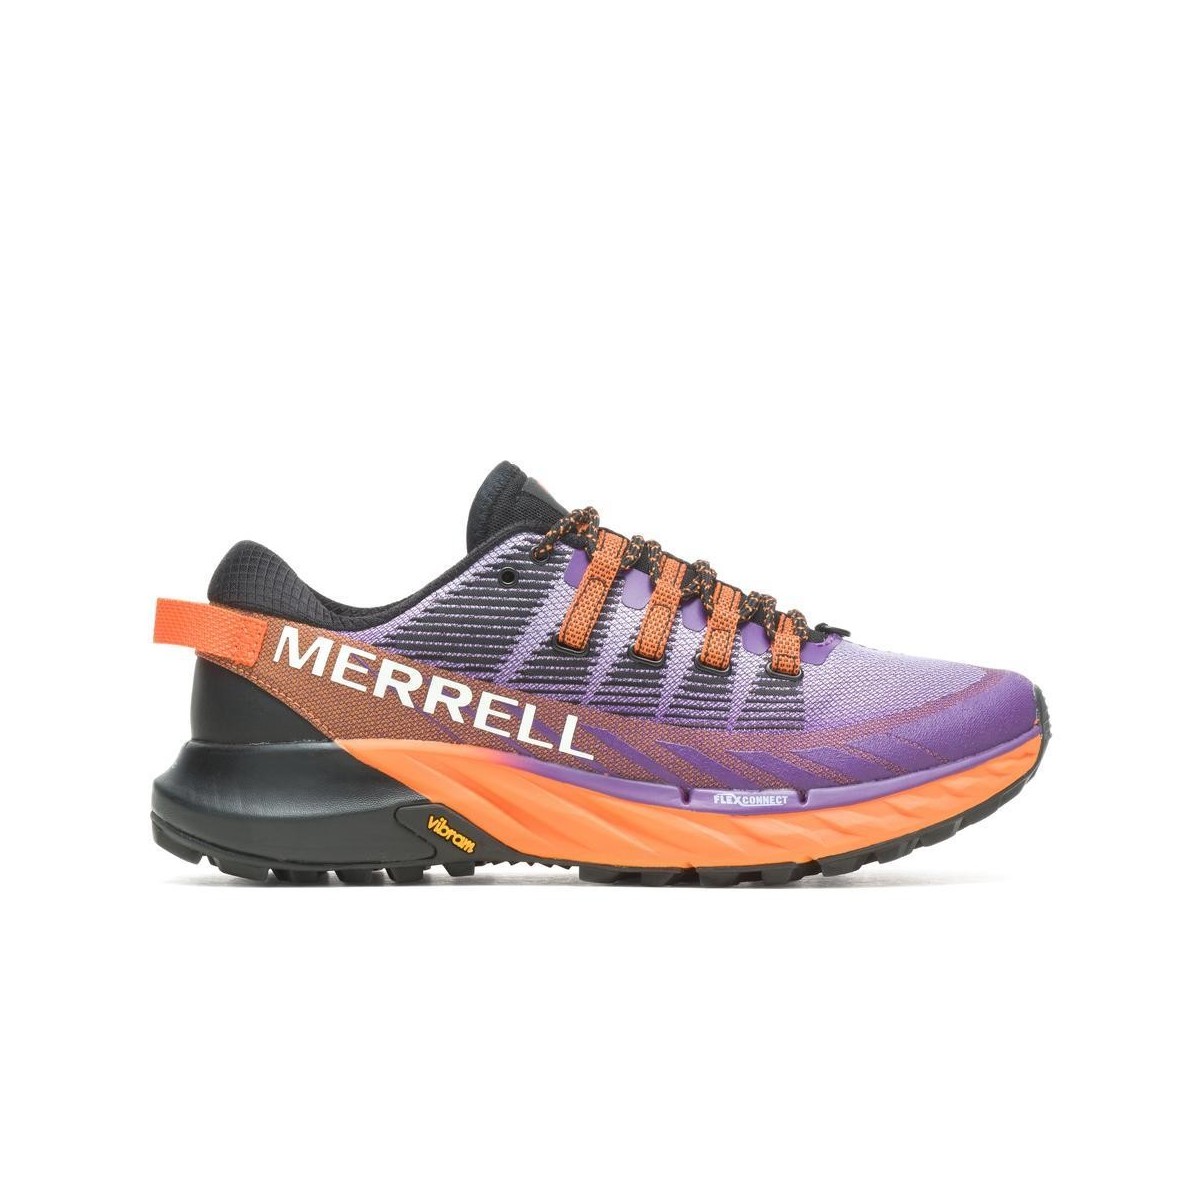 Die Acht günstig Kaufen-Schuhe Merrell Agility Peak 4 Violett Und Orange, Größe 43,5 - EUR. Schuhe Merrell Agility Peak 4 Violett Und Orange, Größe 43,5 - EUR <![CDATA[TRAILRUNNING-SCHUHE MIT DÄMPFUNG UND GRIFF
 Diese Schuhe sind für diejenigen gedacht, die